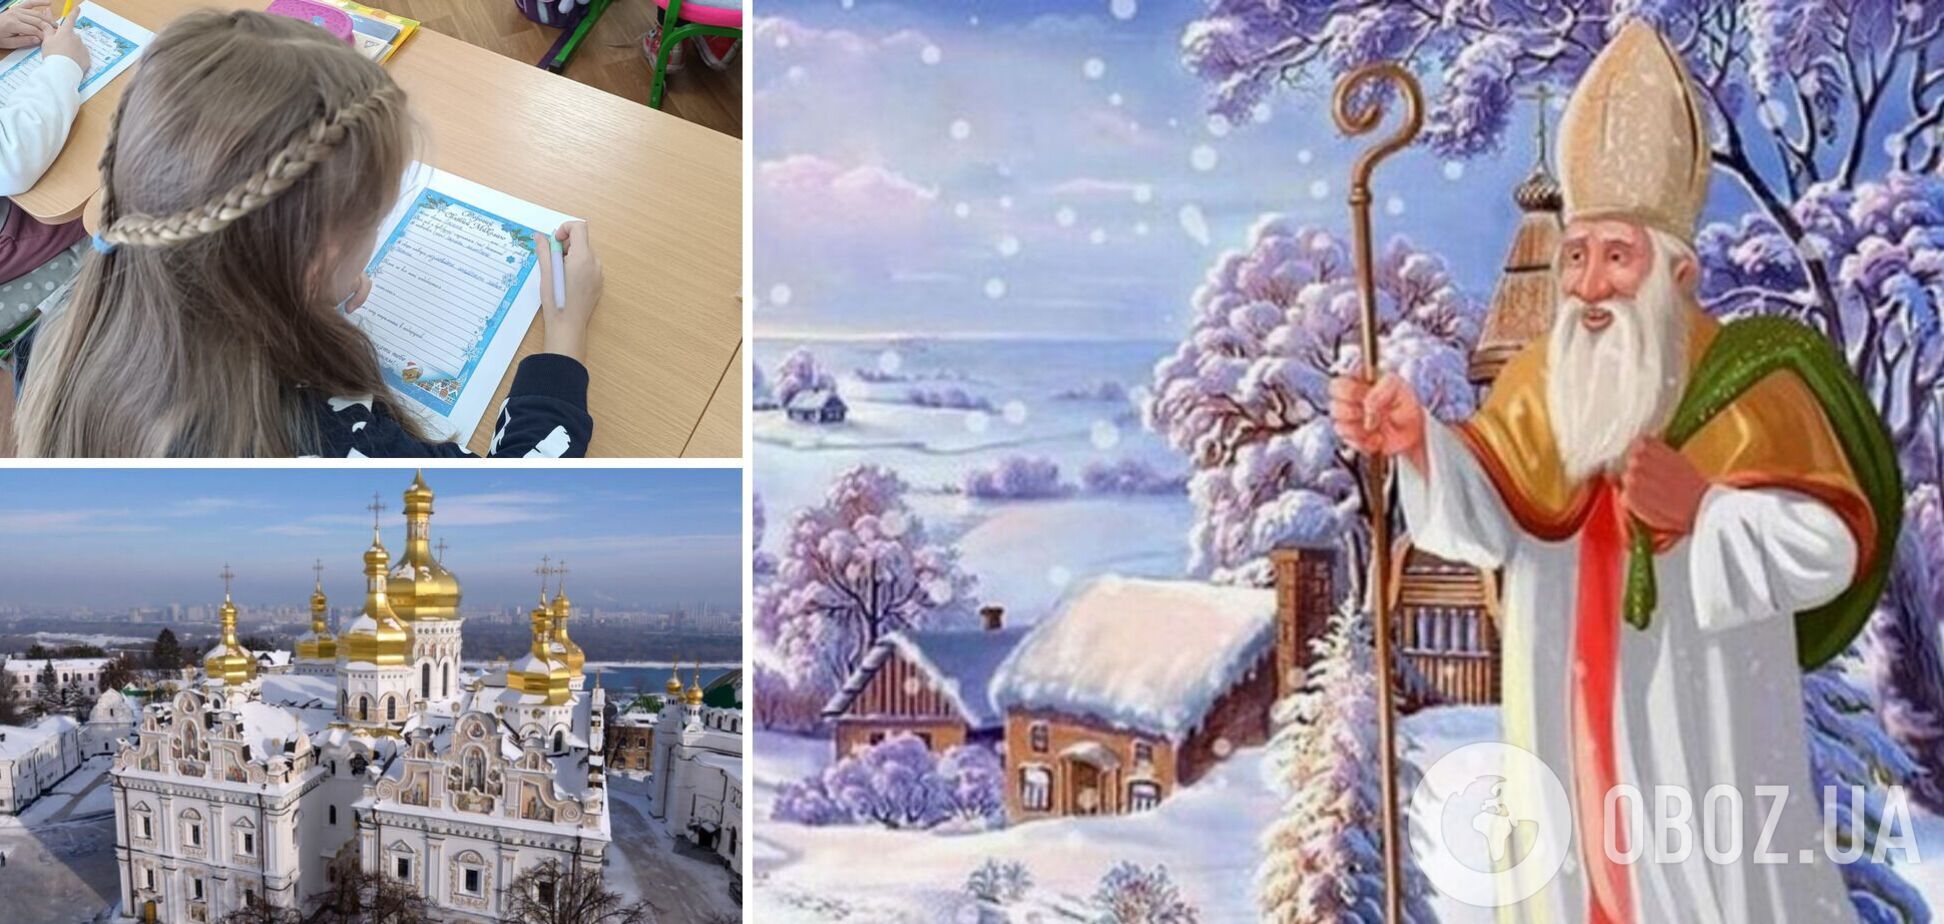 В городах открывают елки, в садах и школах готовят подарки: как в Украине готовятся праздновать Святого Николая по-новому стилю